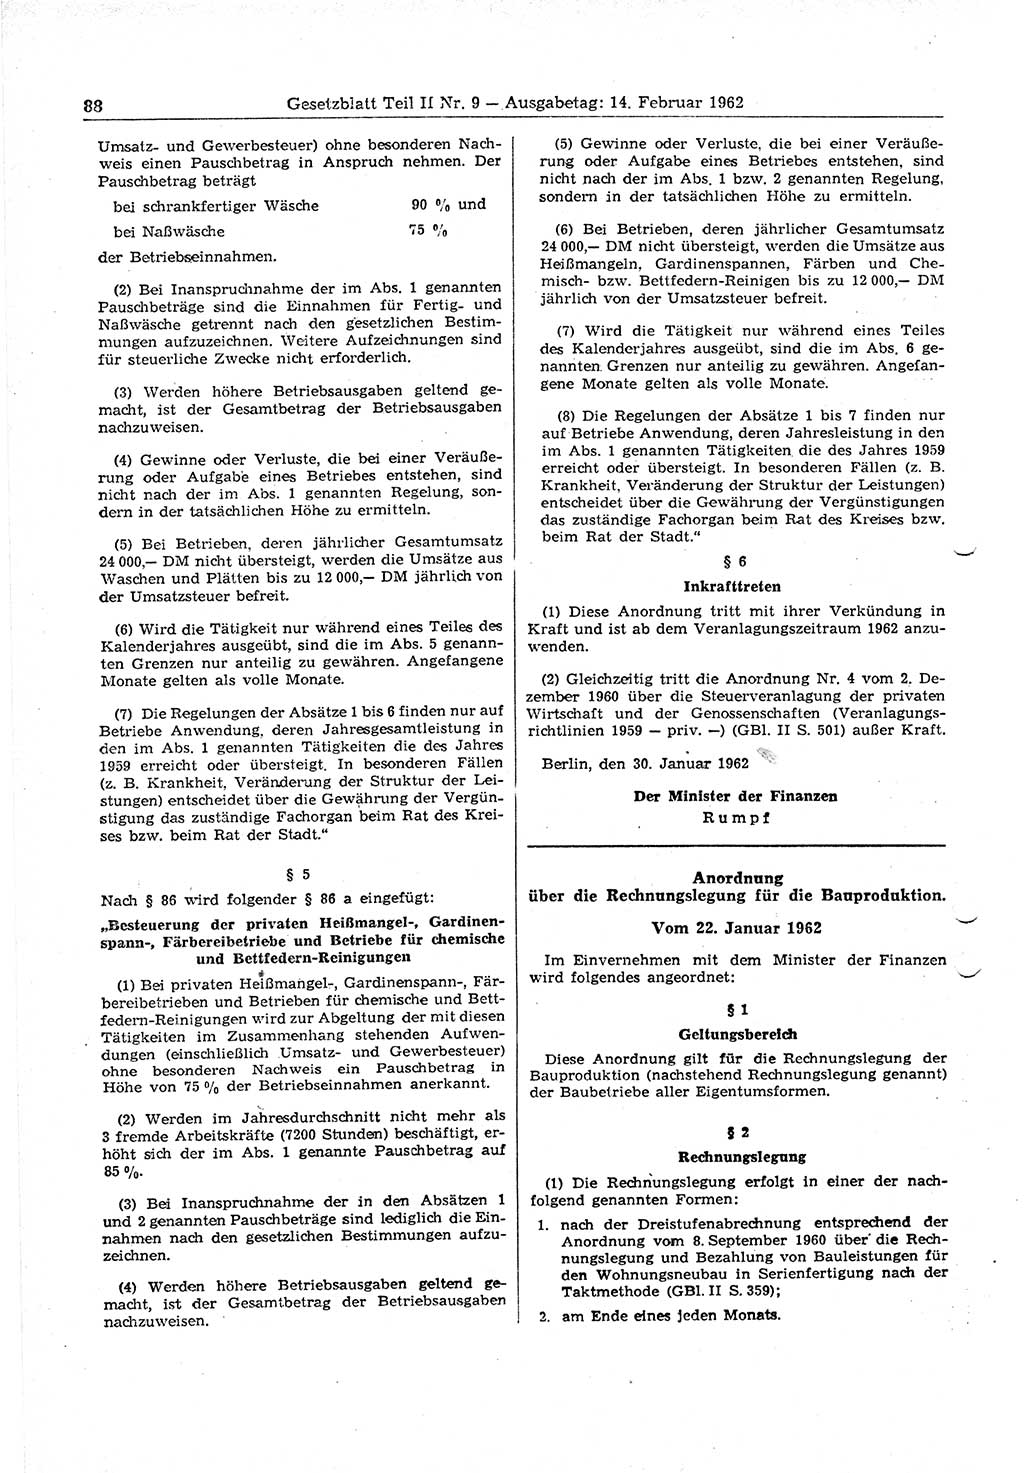 Gesetzblatt (GBl.) der Deutschen Demokratischen Republik (DDR) Teil ⅠⅠ 1962, Seite 88 (GBl. DDR ⅠⅠ 1962, S. 88)